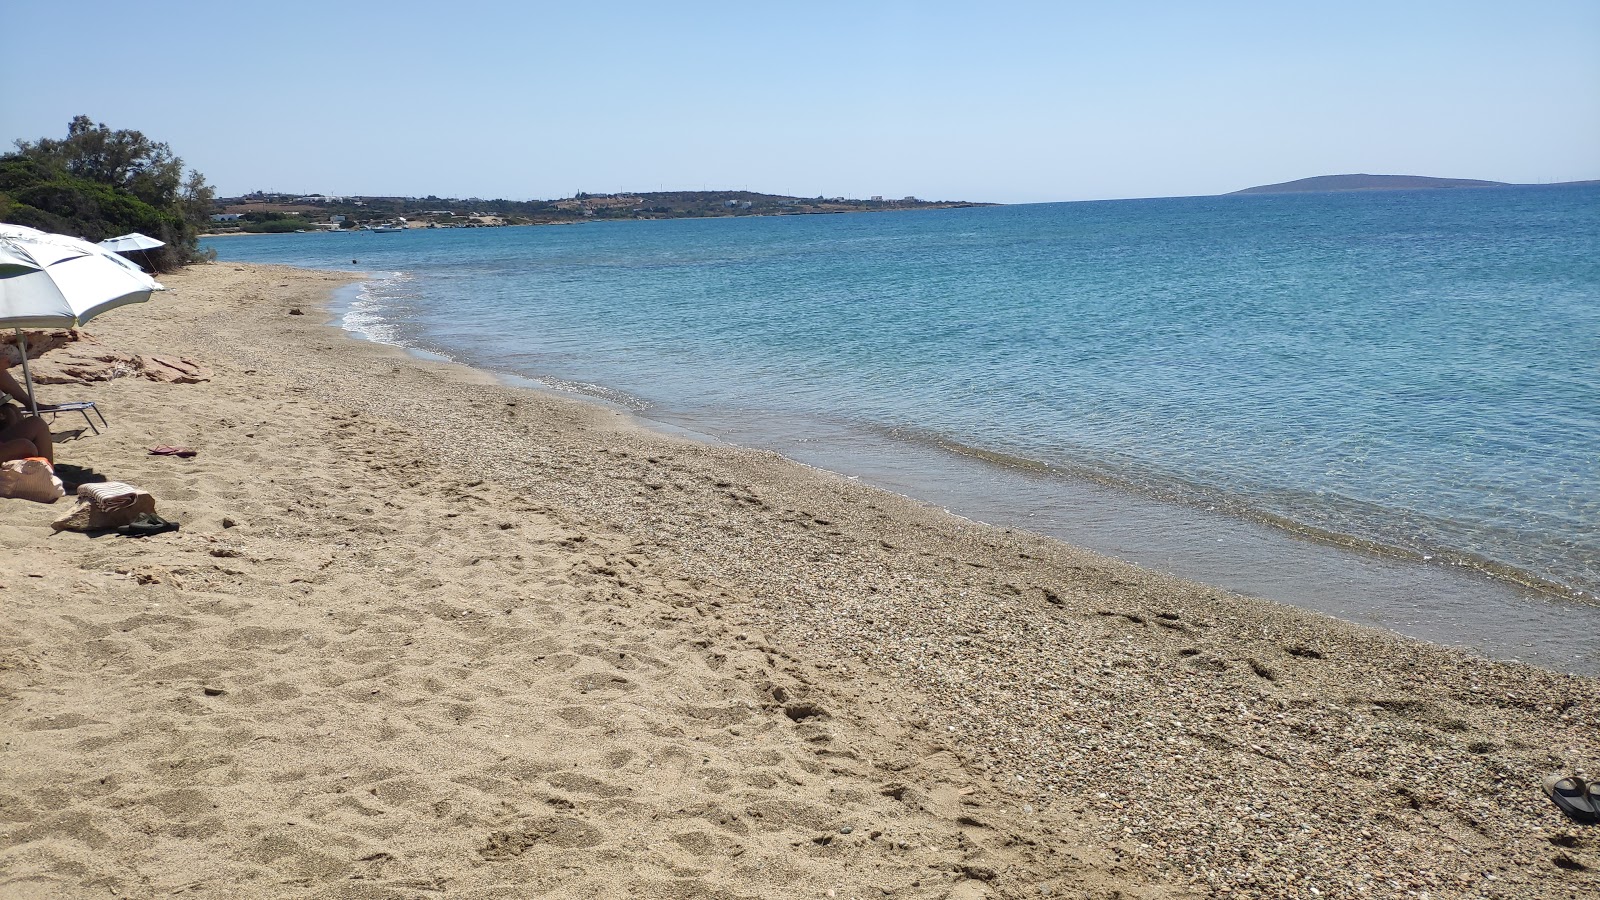 Voutakos beach'in fotoğrafı geniş plaj ile birlikte